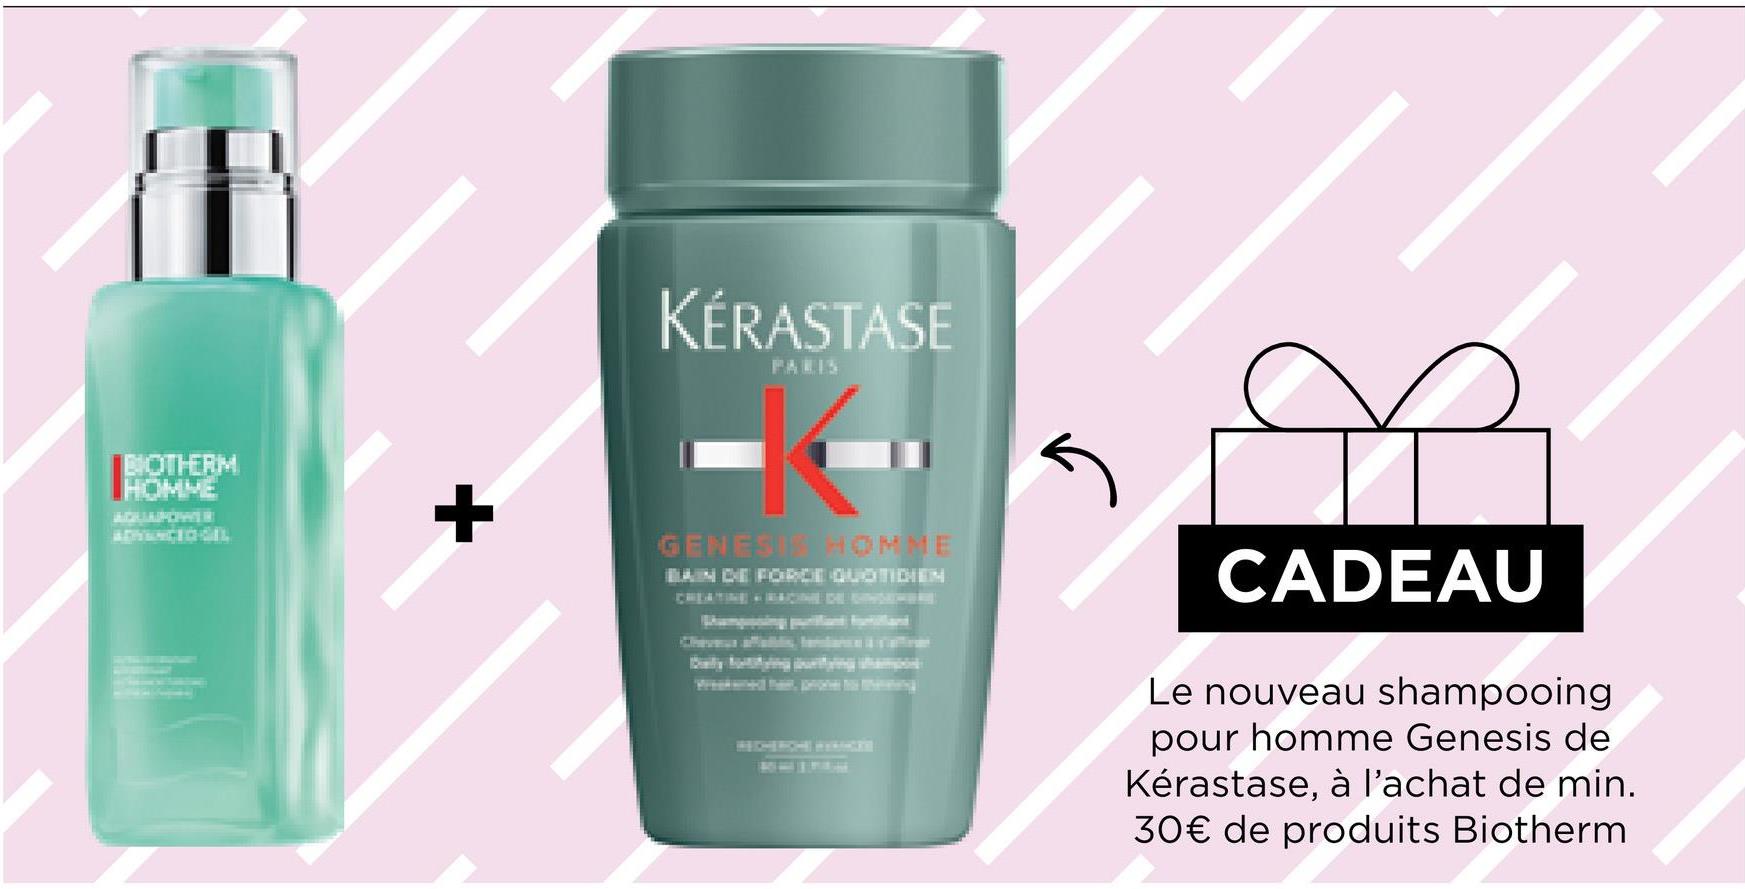 BIOTHERM
+
KÉRASTASE
PARIS
5
CADEAU
Le nouveau shampooing
pour homme Genesis de
Kérastase, à l'achat de min.
30€ de produits Biotherm